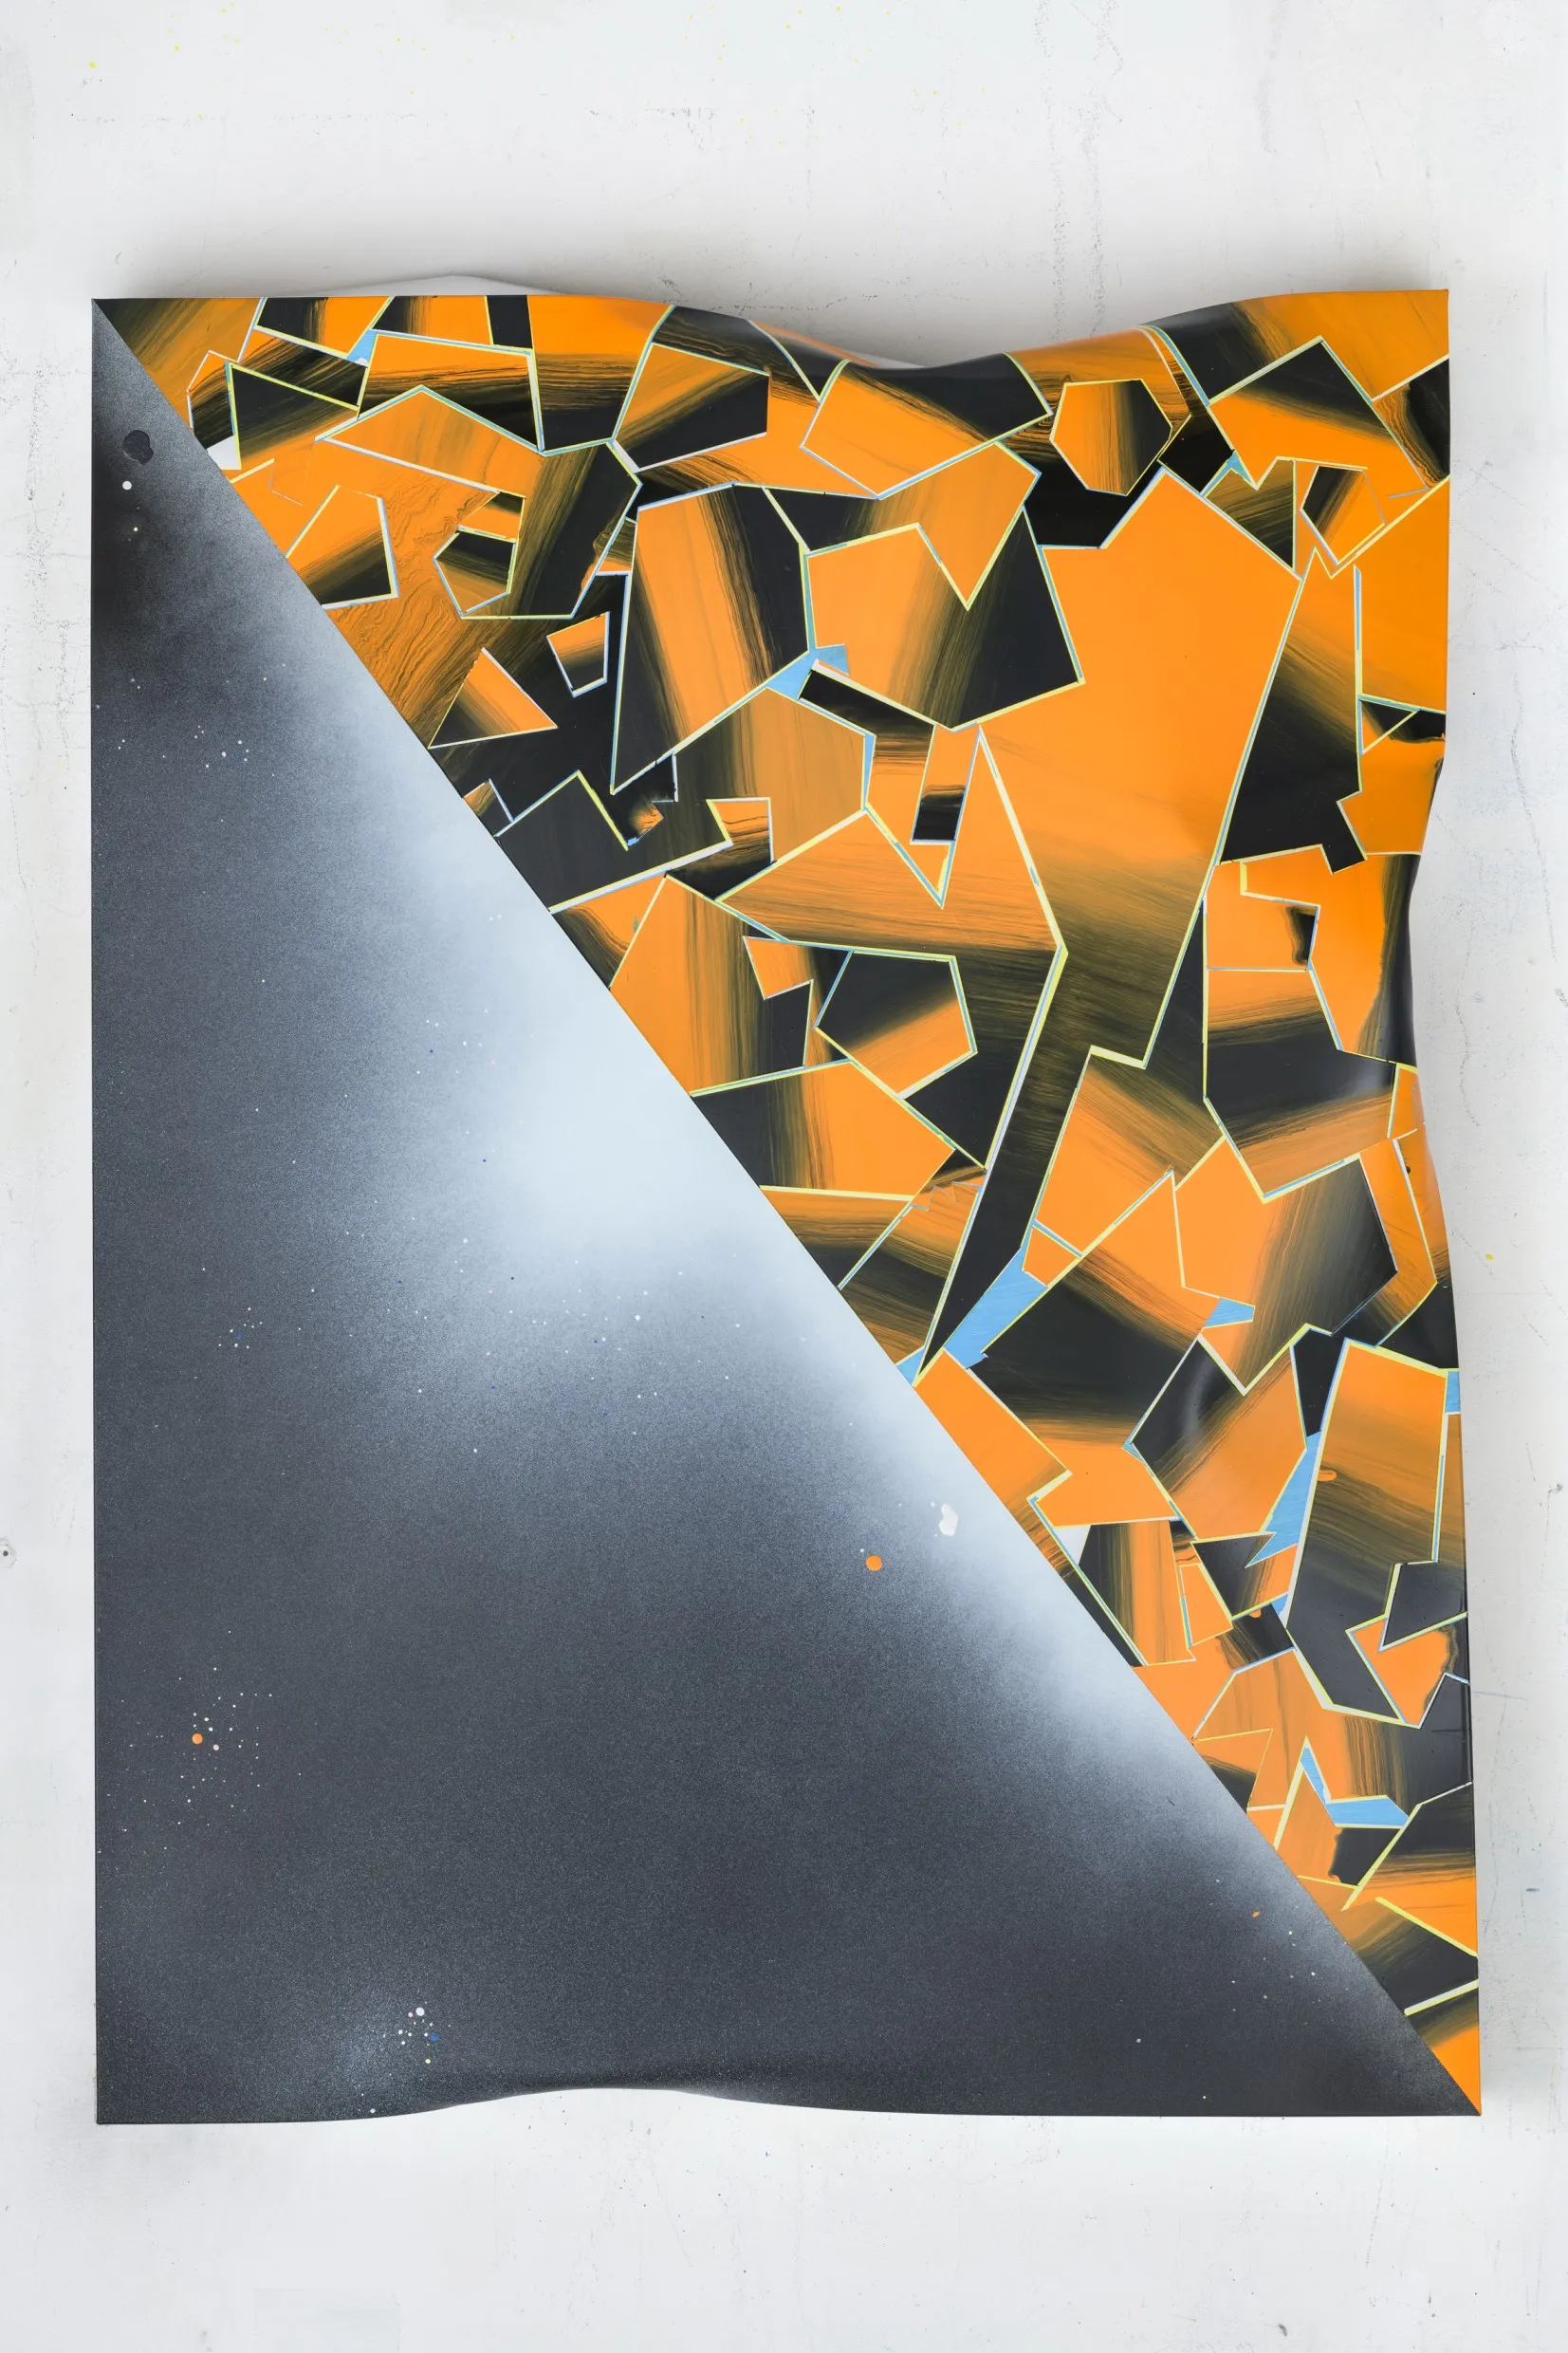 Een gedeukt, sculpturaal metalen plaat met een diagonale verdeling, met aan de ene kant een zwart-witte gradiënt en aan de andere kant voornamelijk oranje geometrische vormen.